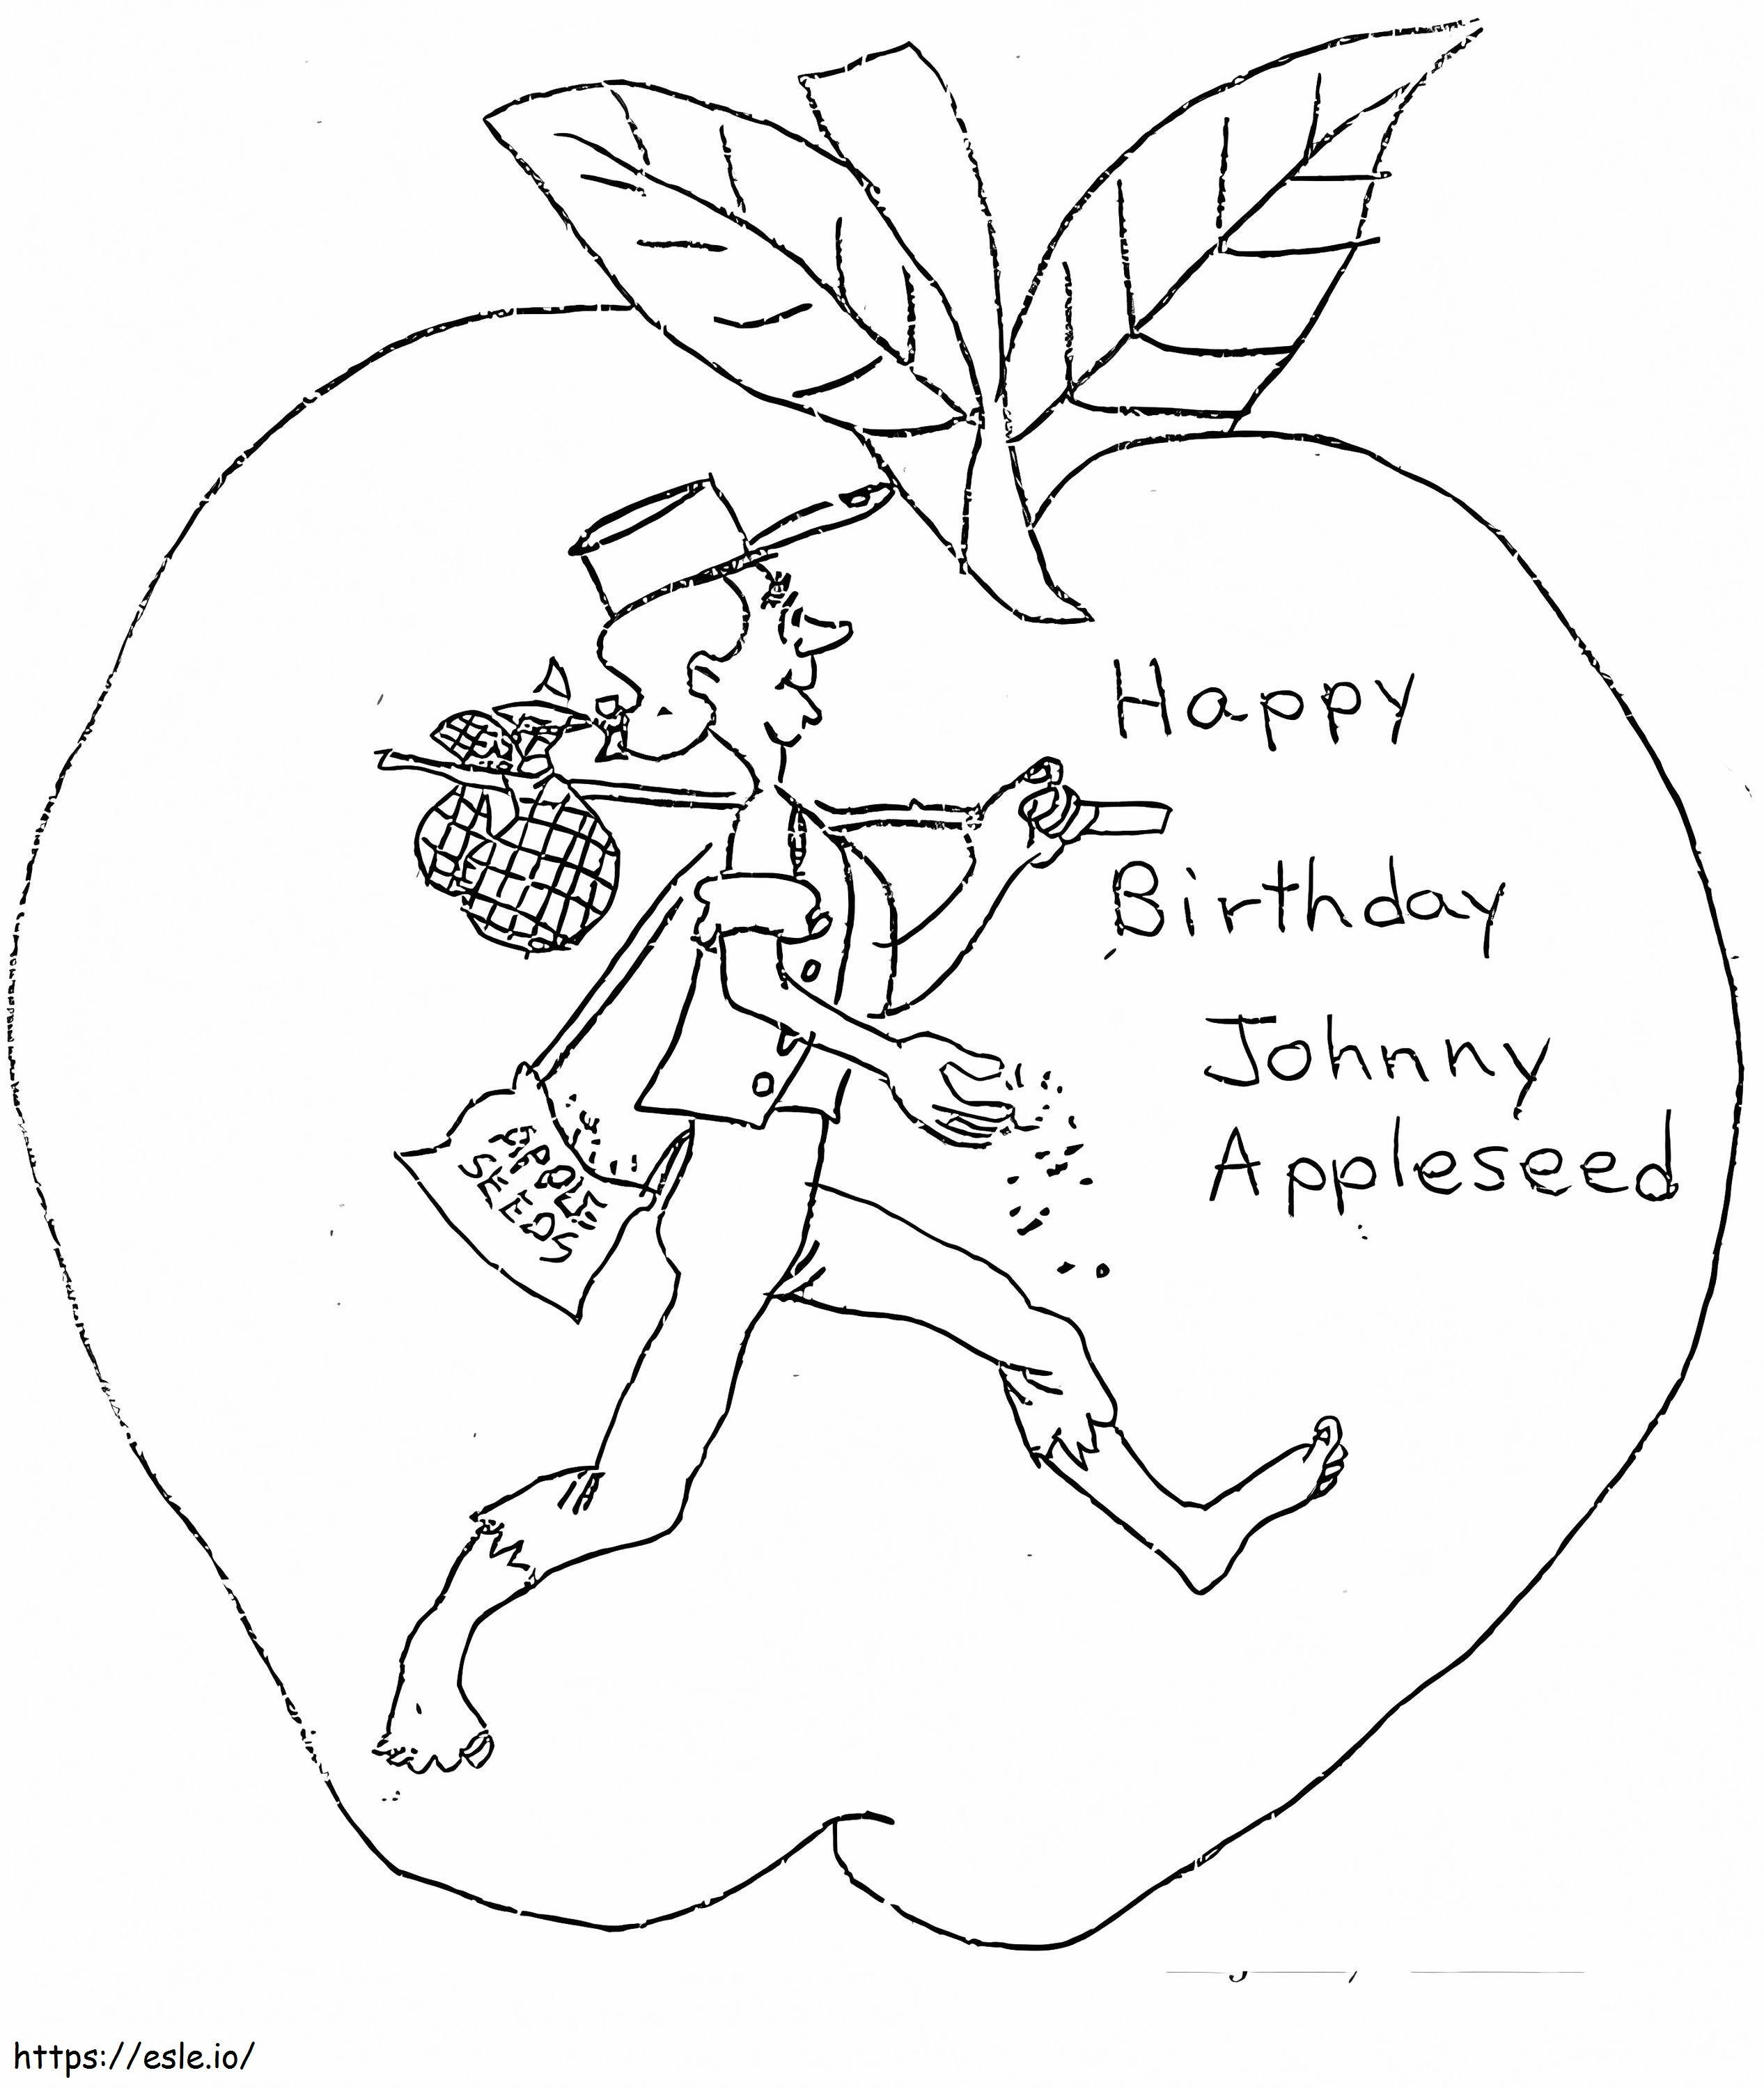 Gefeliciteerd met je verjaardag Johnny Appleseed kleurplaat kleurplaat